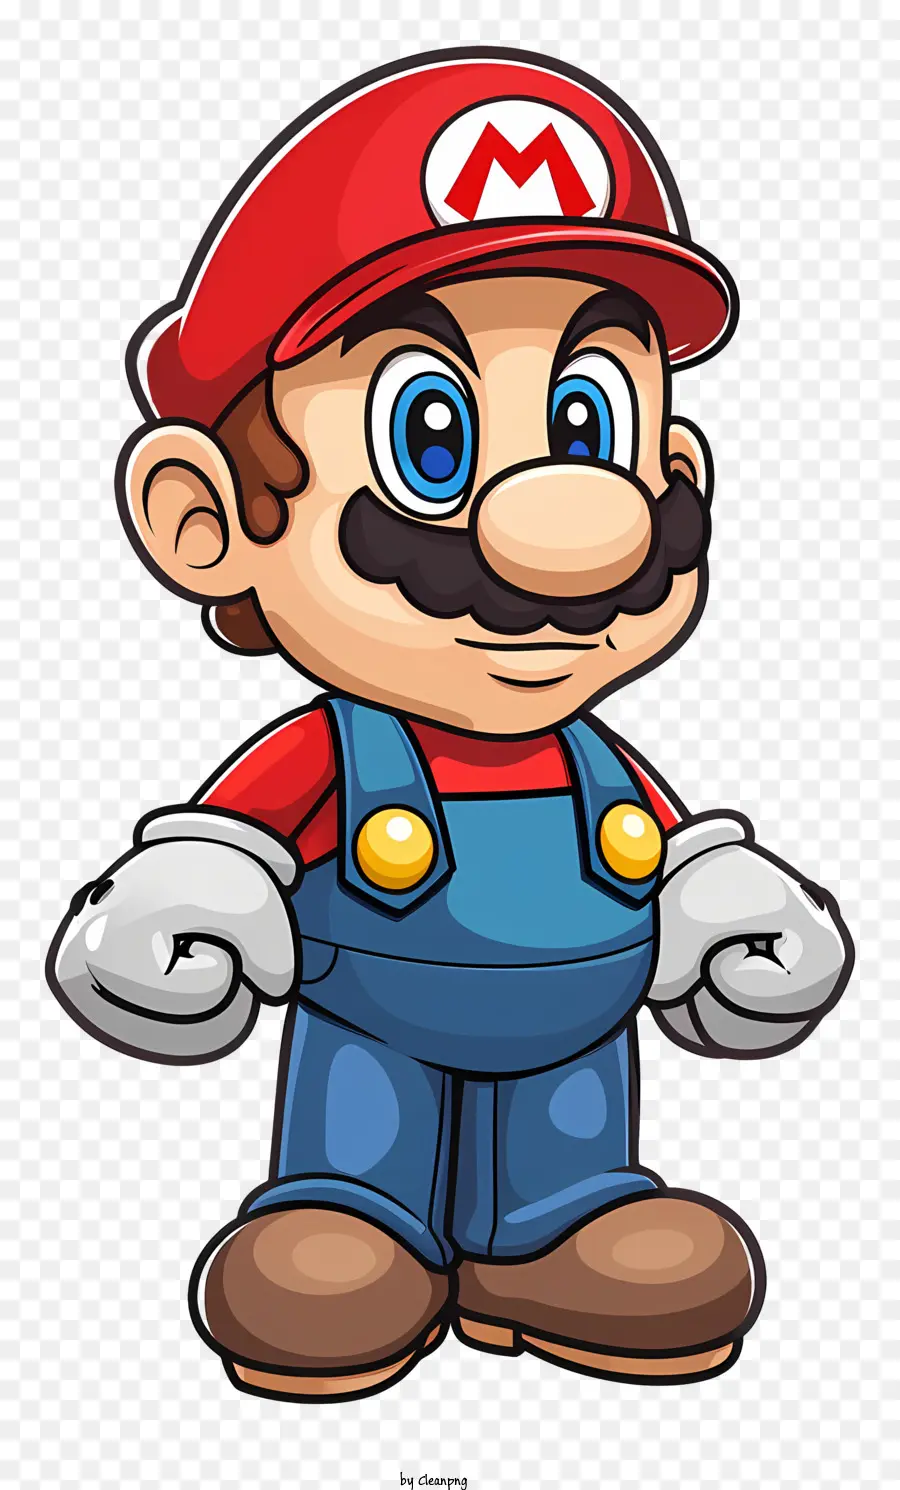 Mario - Glücklicher Mann mit blauen Augen, die rote Mütze tragen